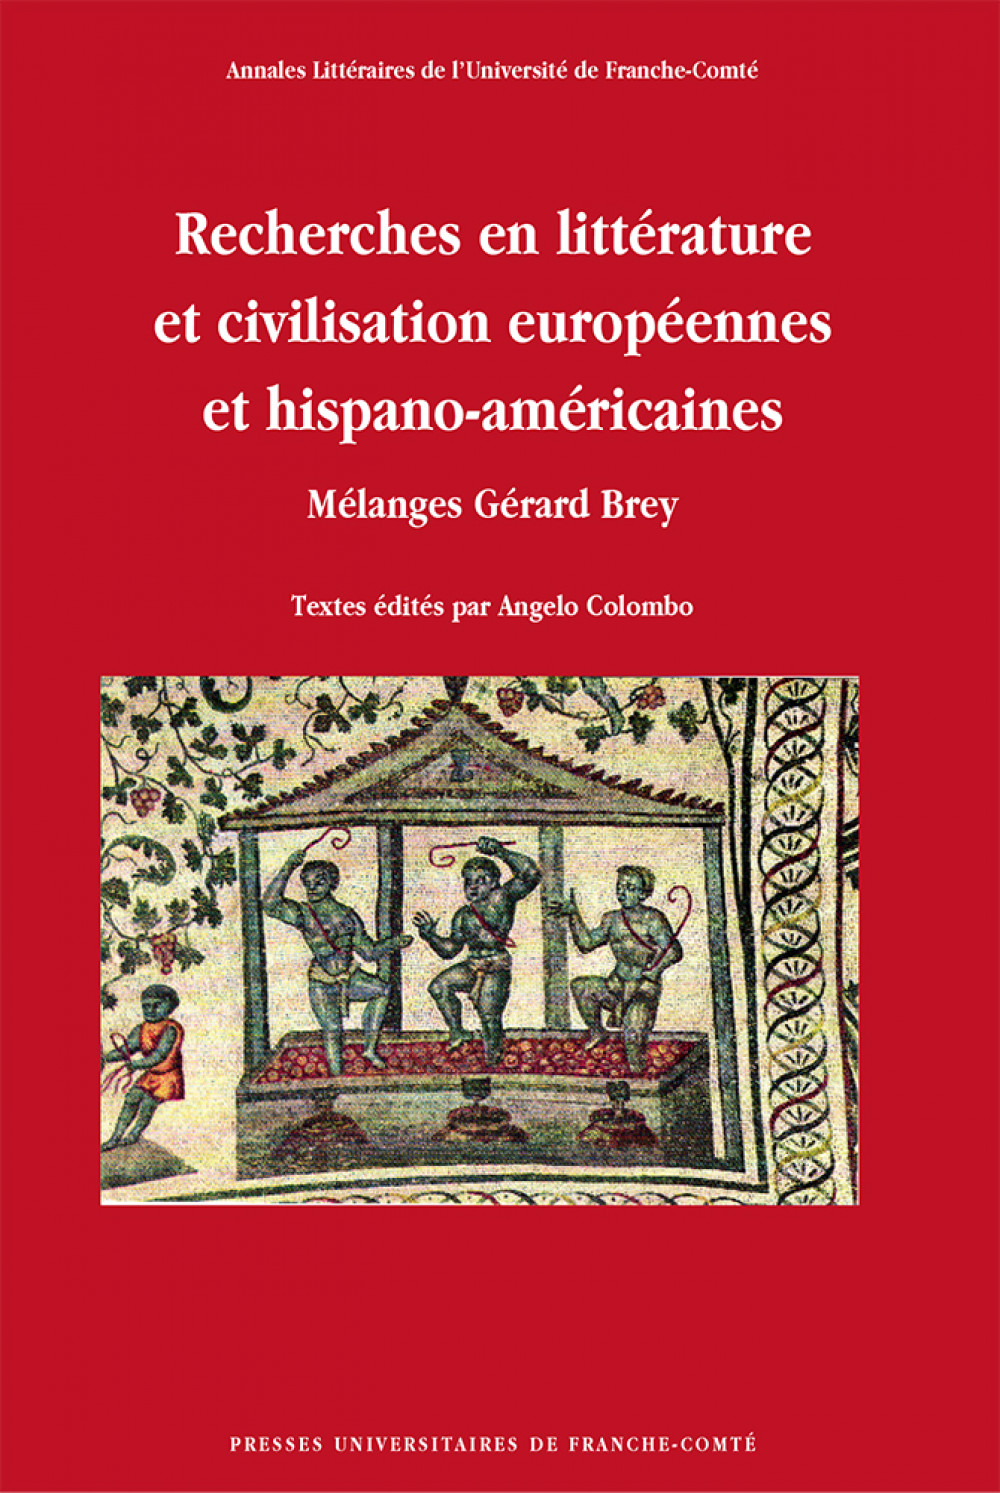 Recherches en littérature et civilisation européennes et hispano-américaines